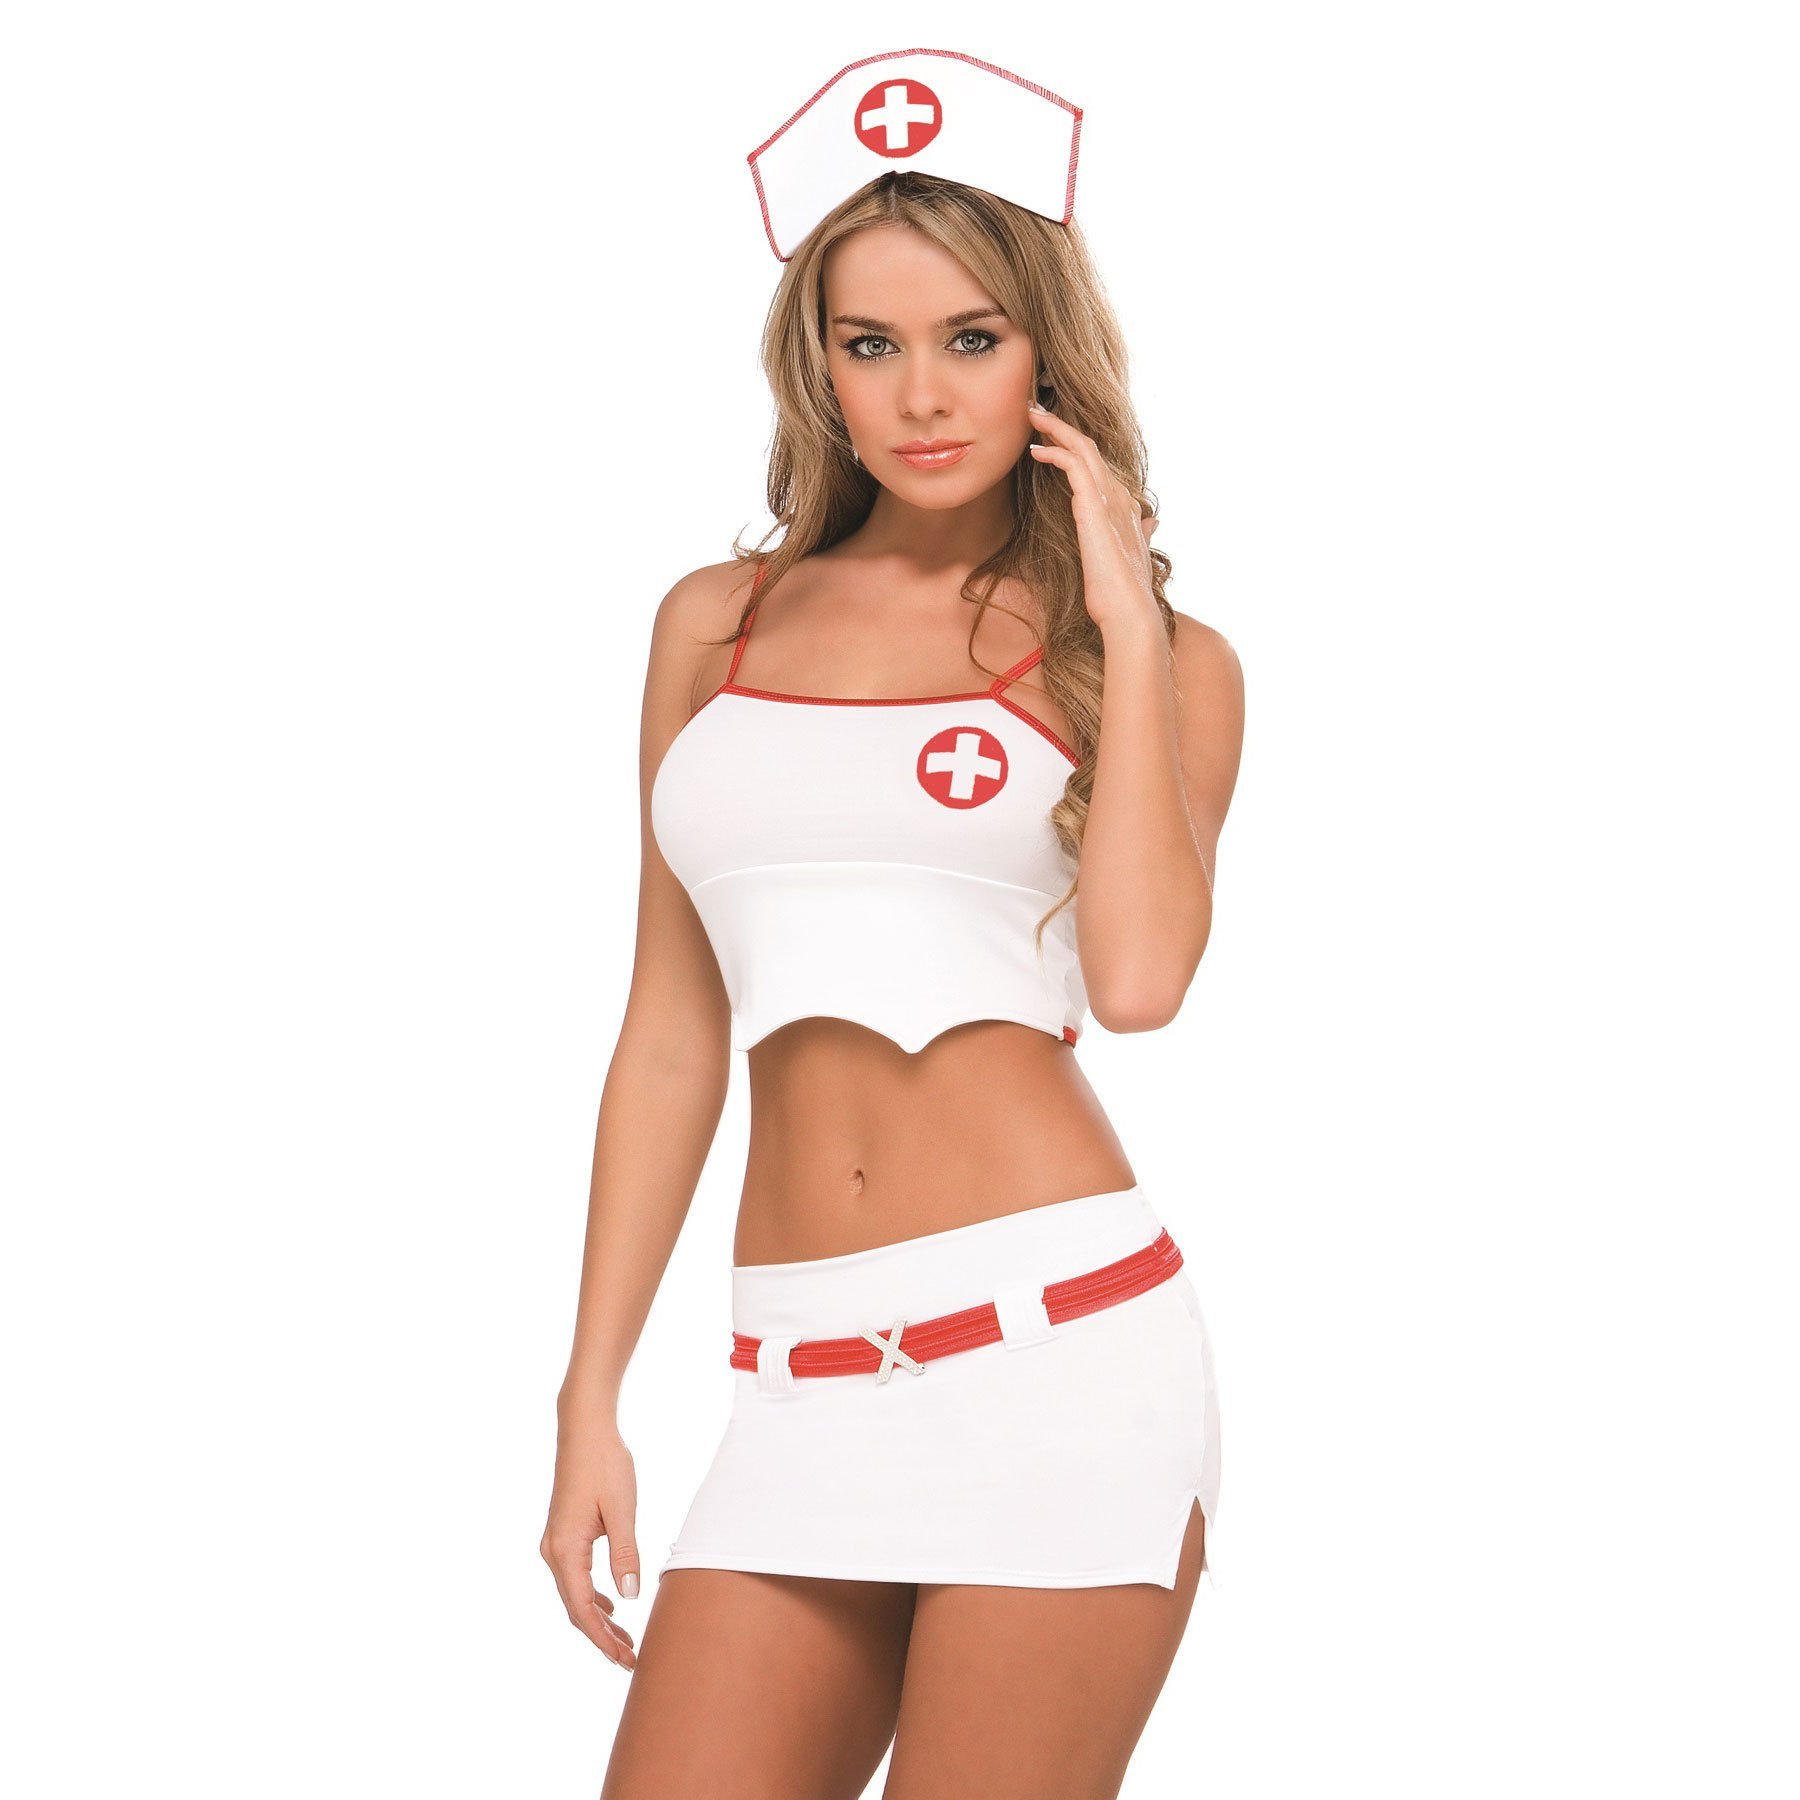 Стриптиз горячей медсестры в белых чулках